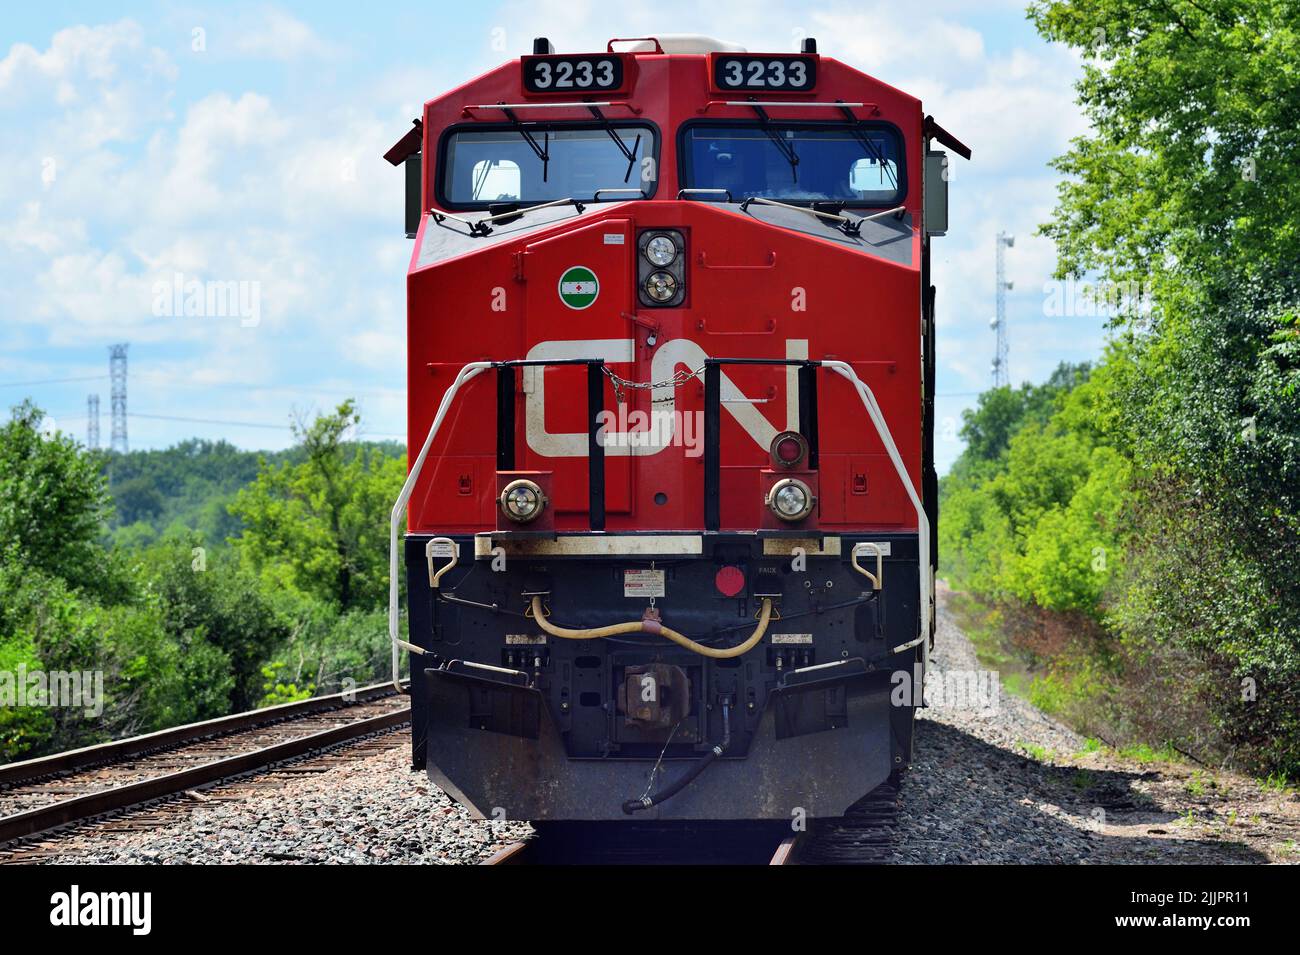 Bartlett, Illinois, USA. Die Lokomotiven der Canadian National Railway, die von einer speziell lackierten Einheit zu Ehren von Veteranen angeführt werden, warten auf eine Besatzung. Stockfoto